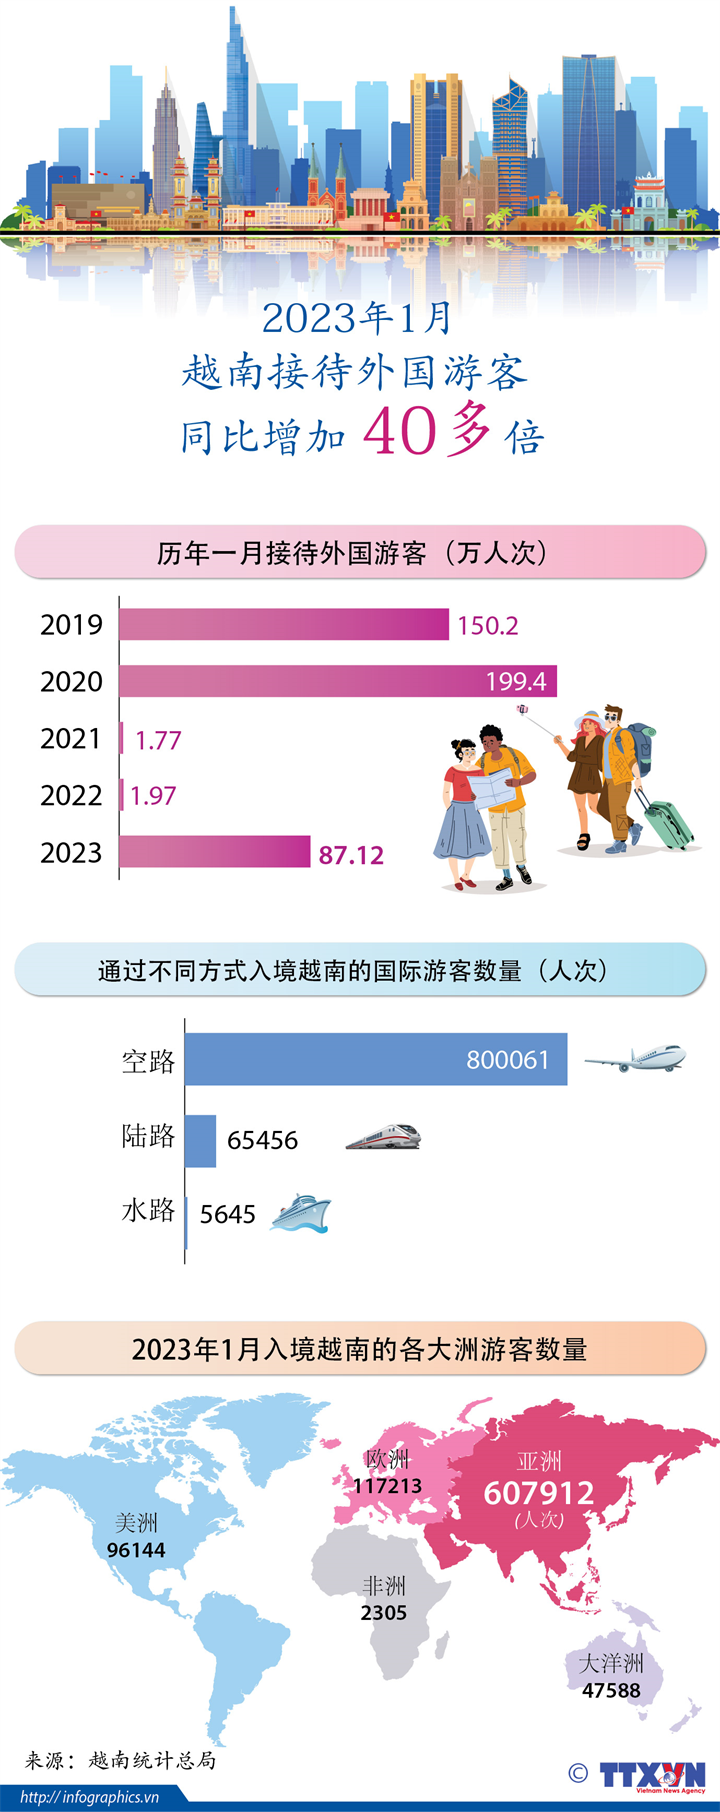  2023年1月越南接待游客同比增加 40多倍